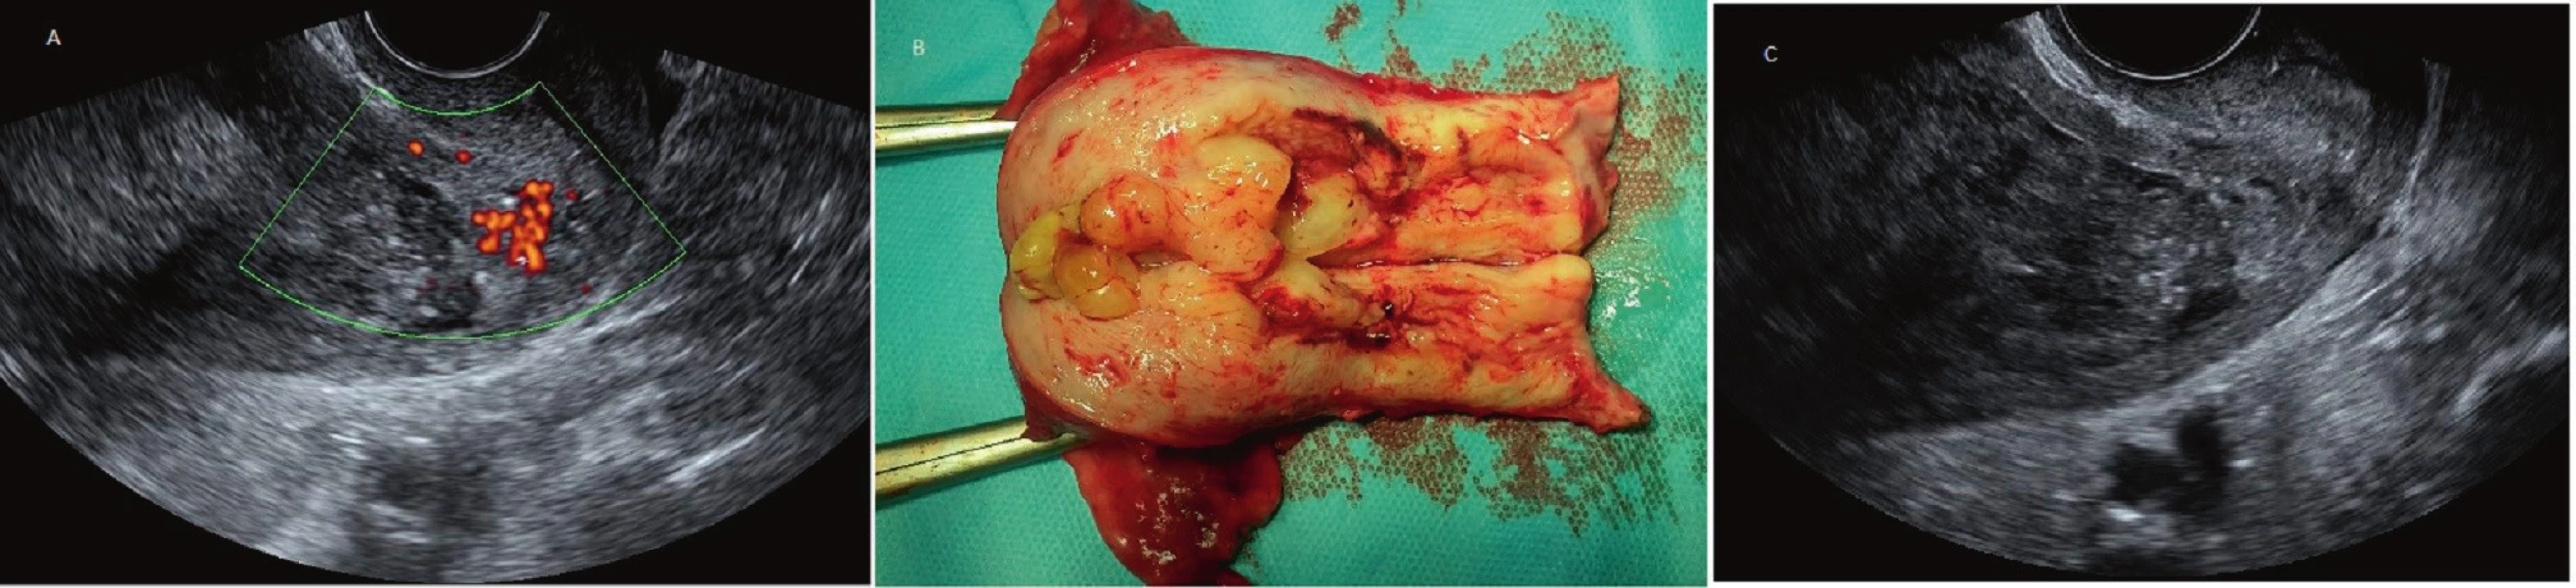 Ultrazvukové zobrazení karcinomu endometria stadia pT1a.